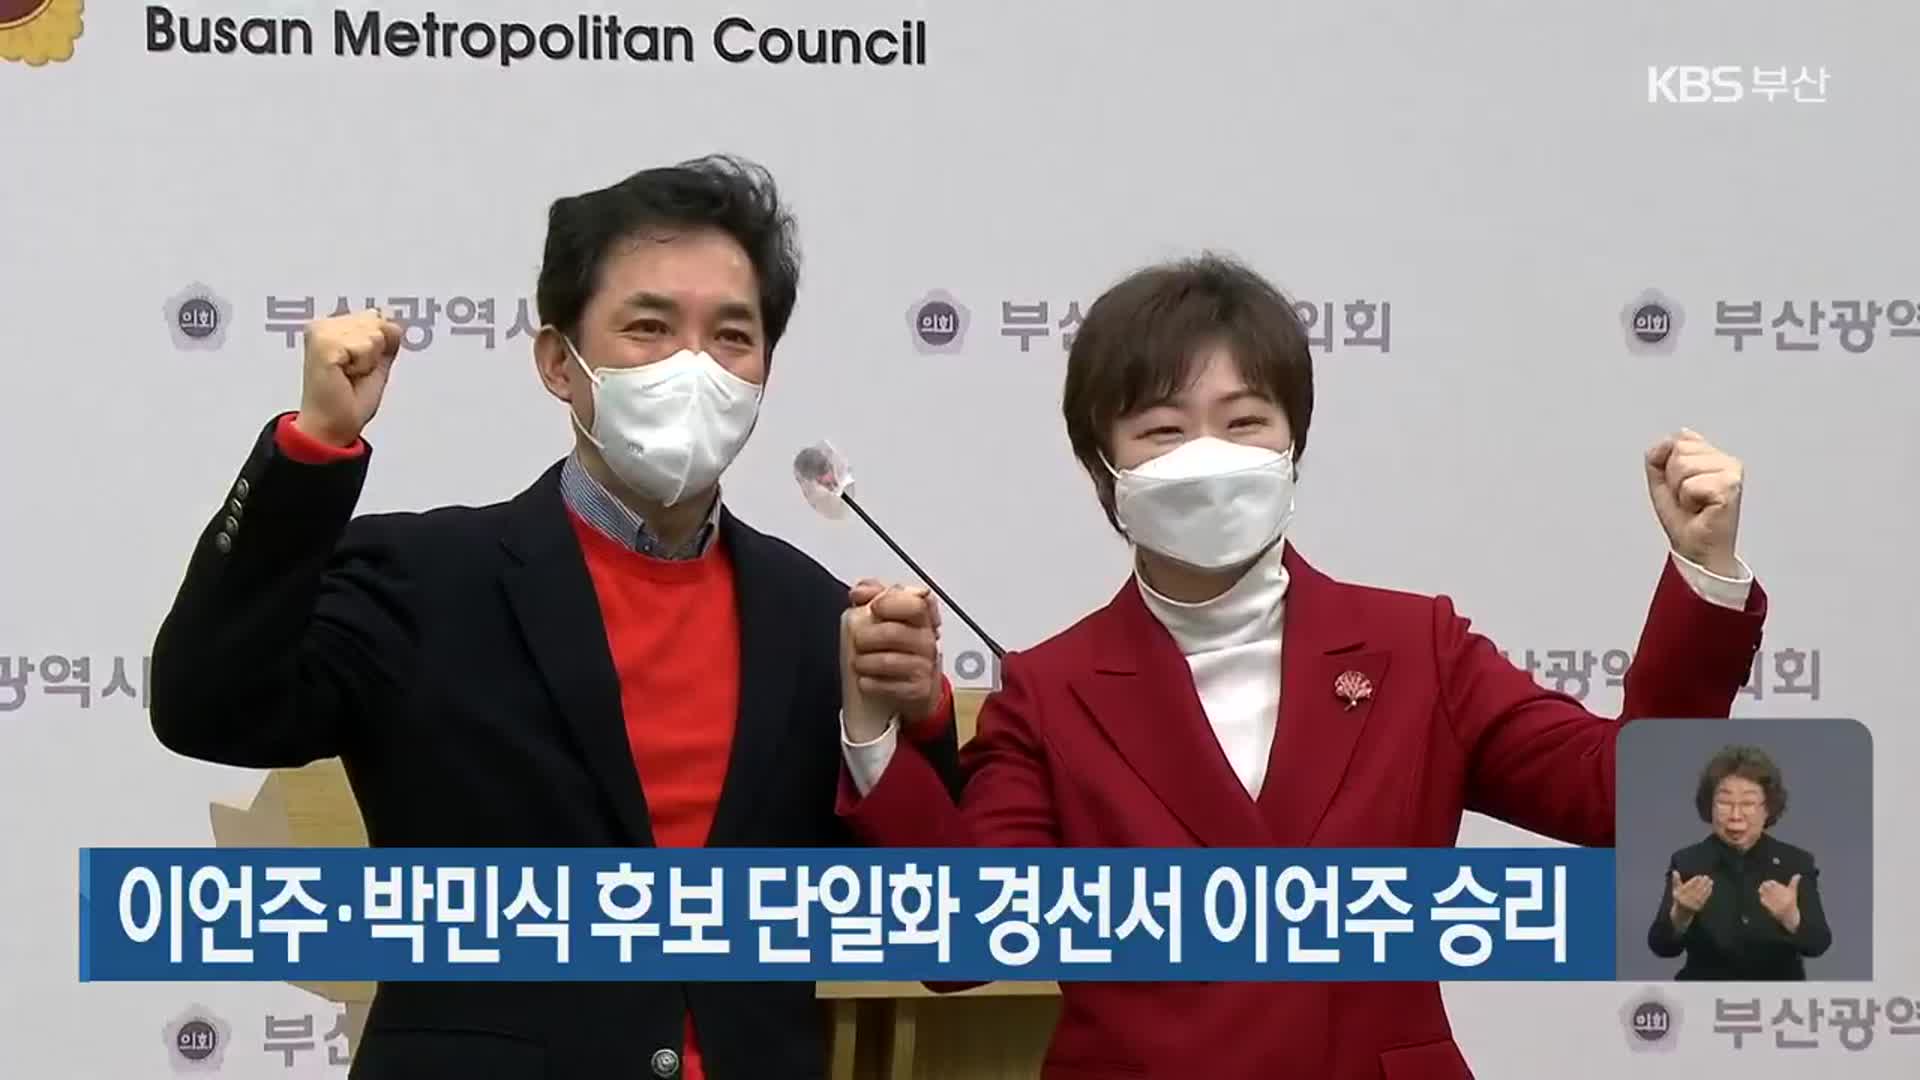 이언주·박민식 후보 단일화 경선서 이언주 승리